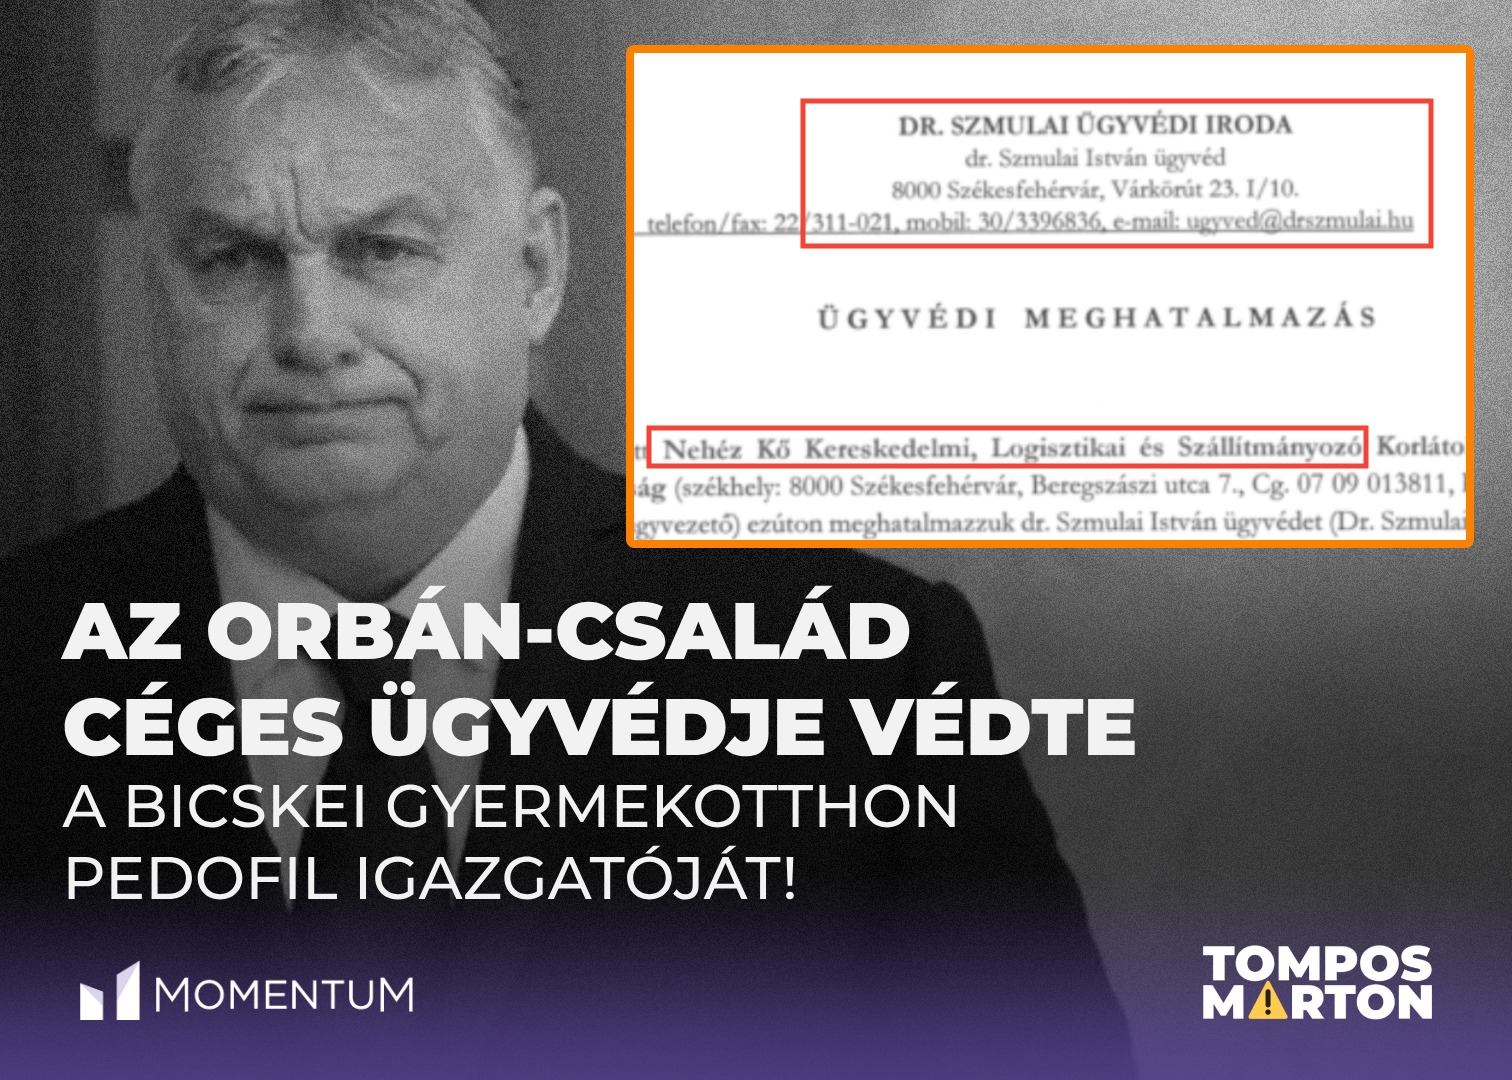 Tompos Márton: Az Orbán-család céges ügyvédje védte a pedofil bicskei igazgatót